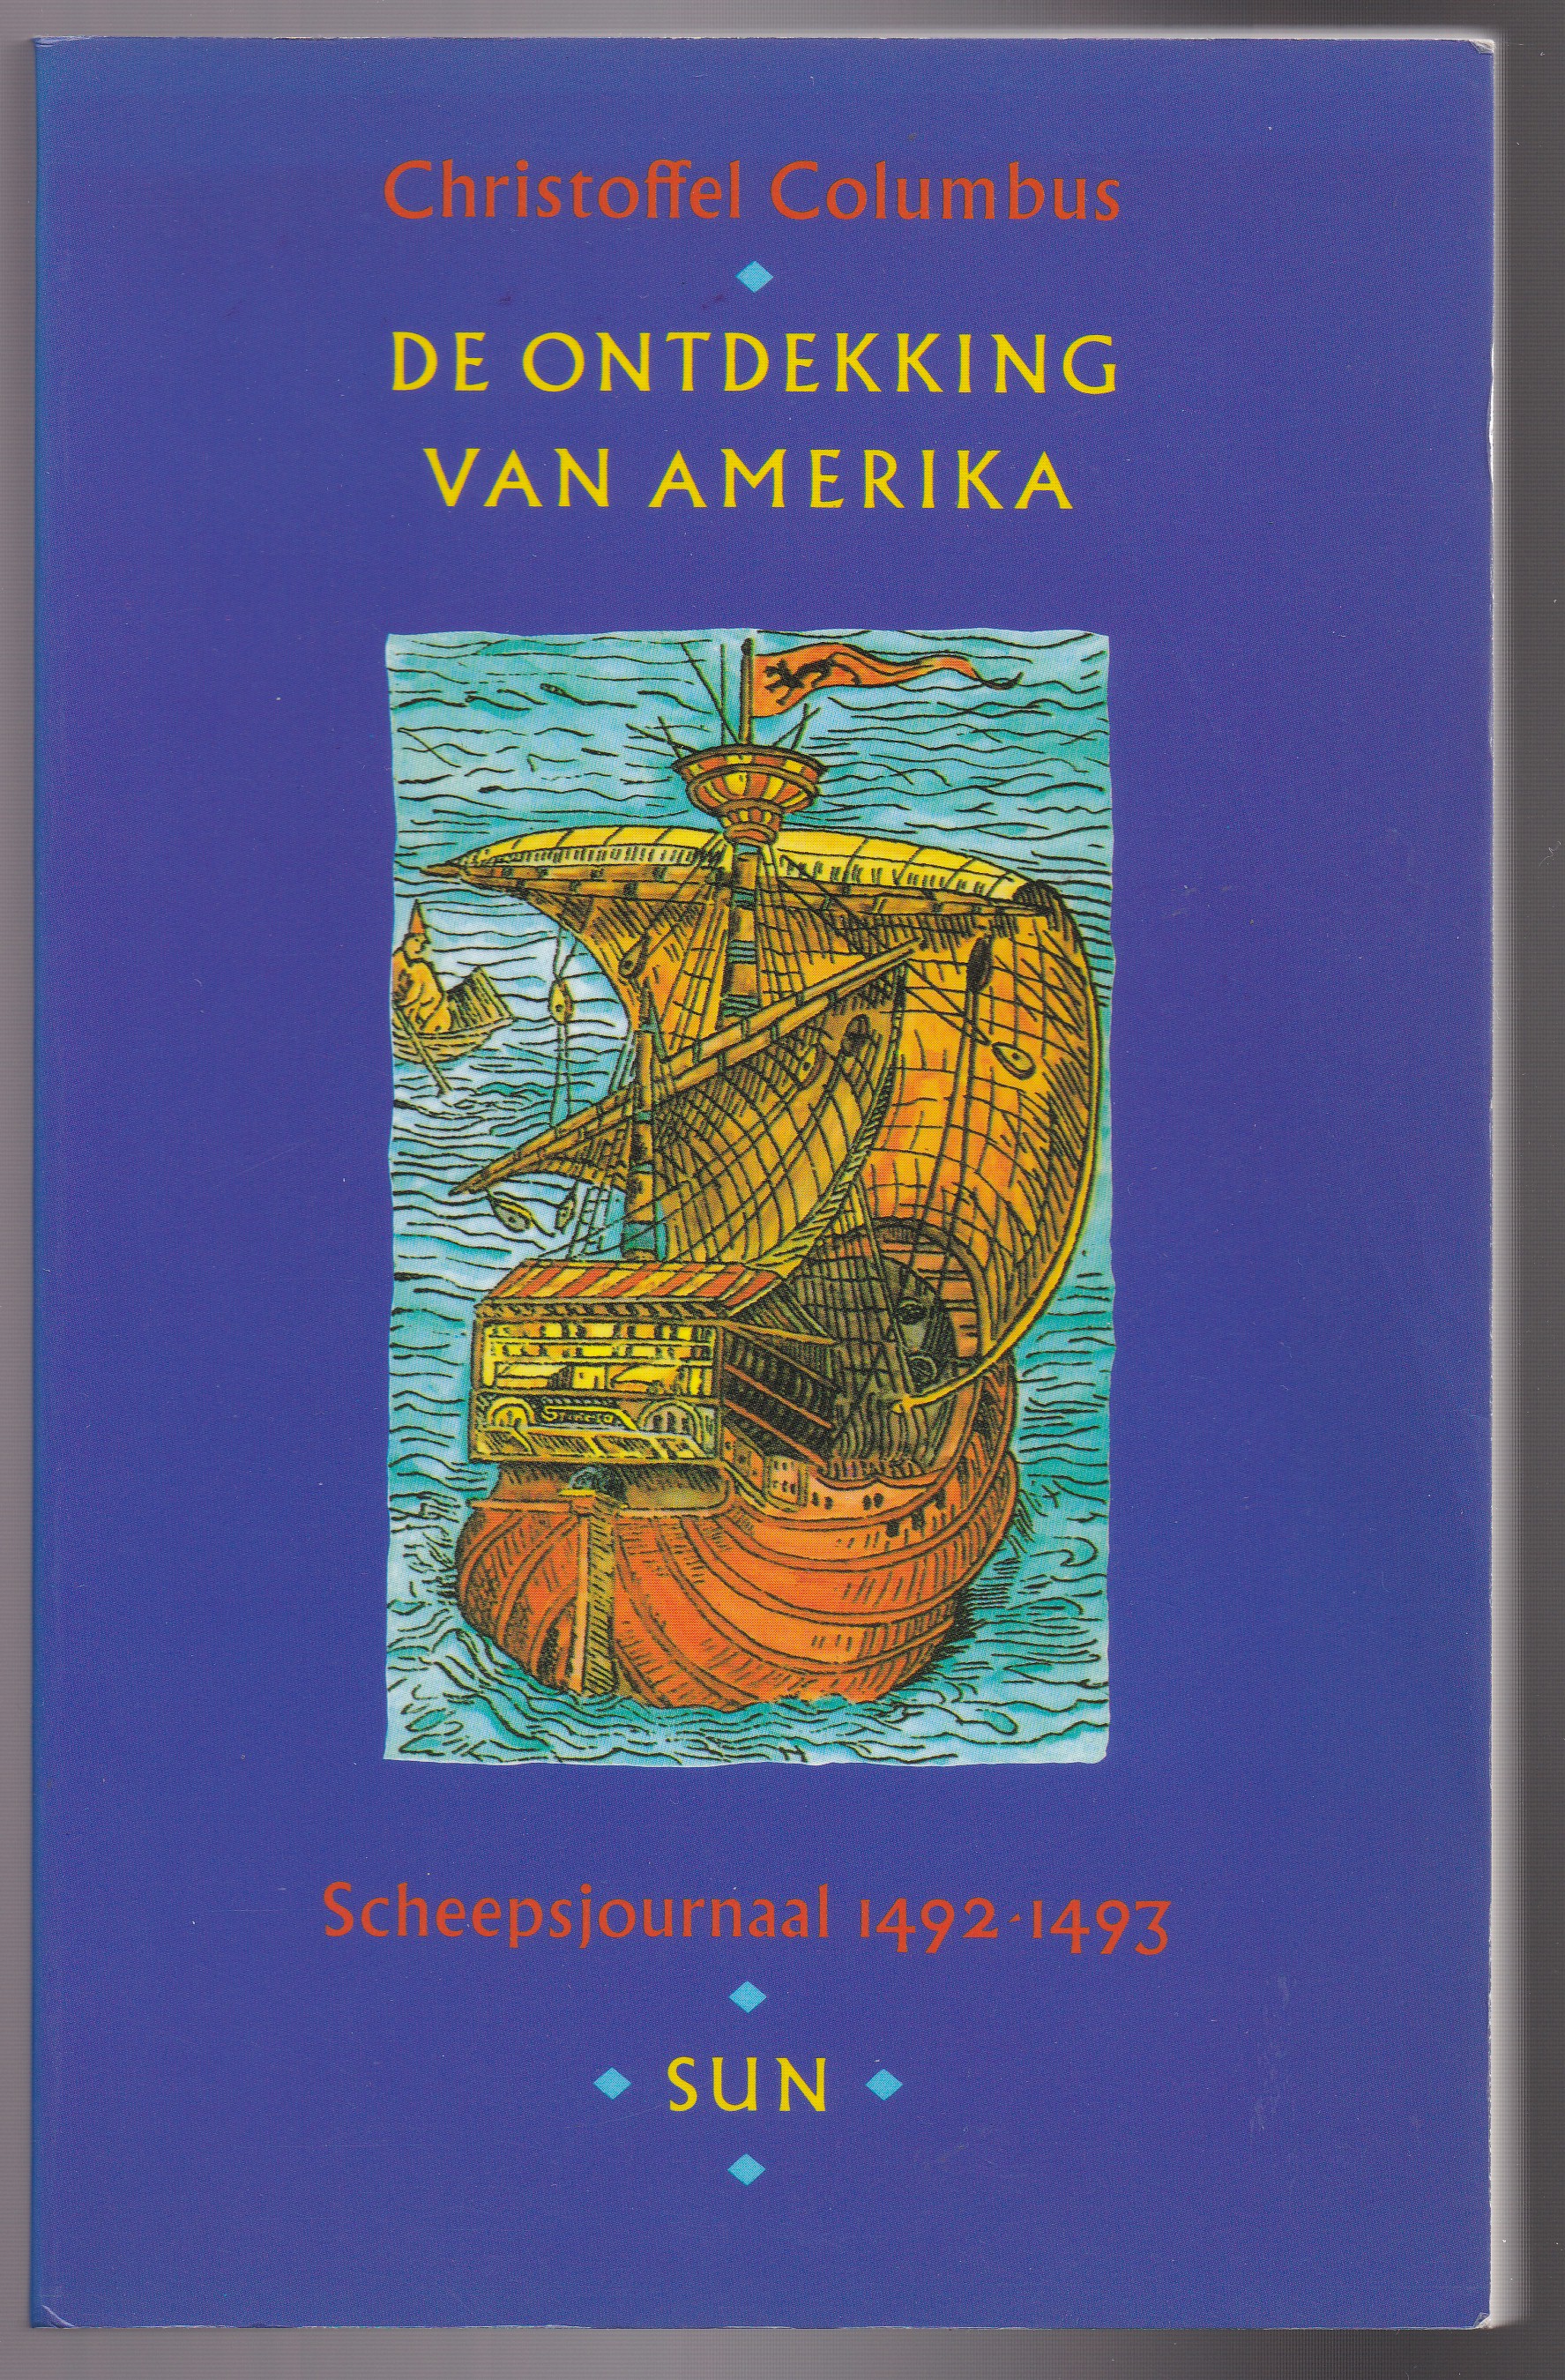 Columbus, Christoffel - De ontdekking van Amerika, Scheepsjournaal 1492-1493. Vertaling en annotatie: Hans Werner. Redactie en inleiding: Wilfried Uitterhoeve